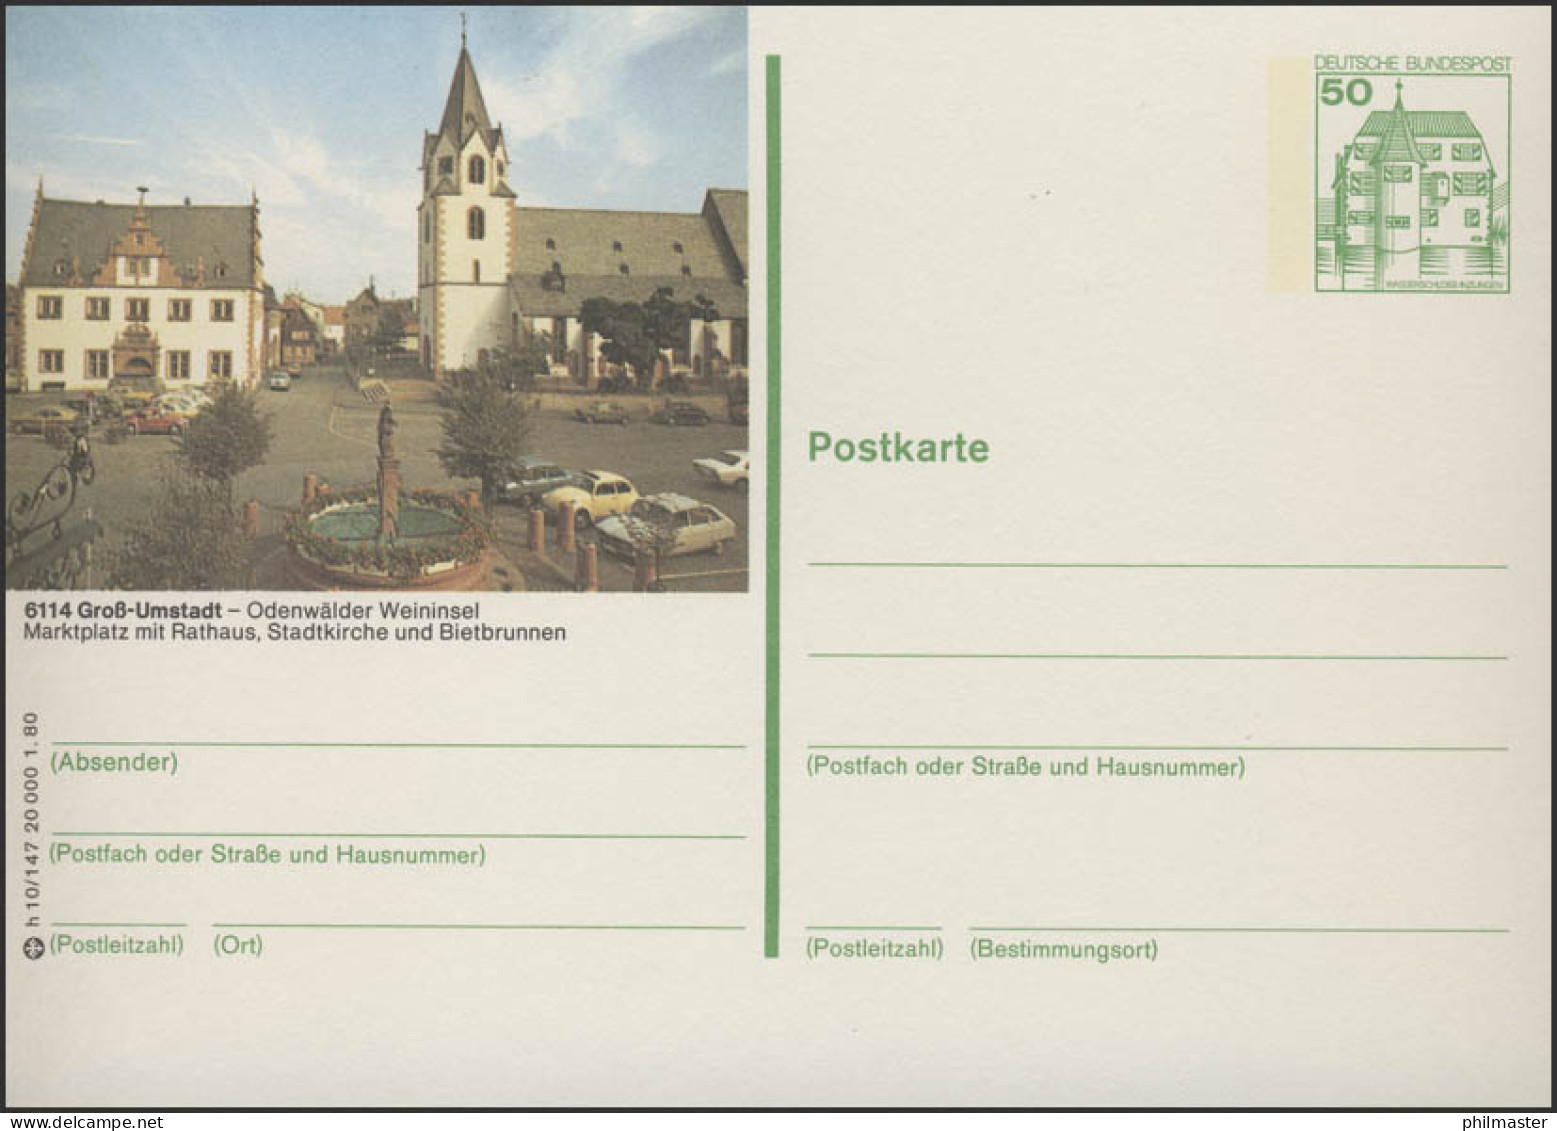 P130-h10/147 - 6114 Groß Umstadt - Marktplatz Rathaus ** - Bildpostkarten - Ungebraucht